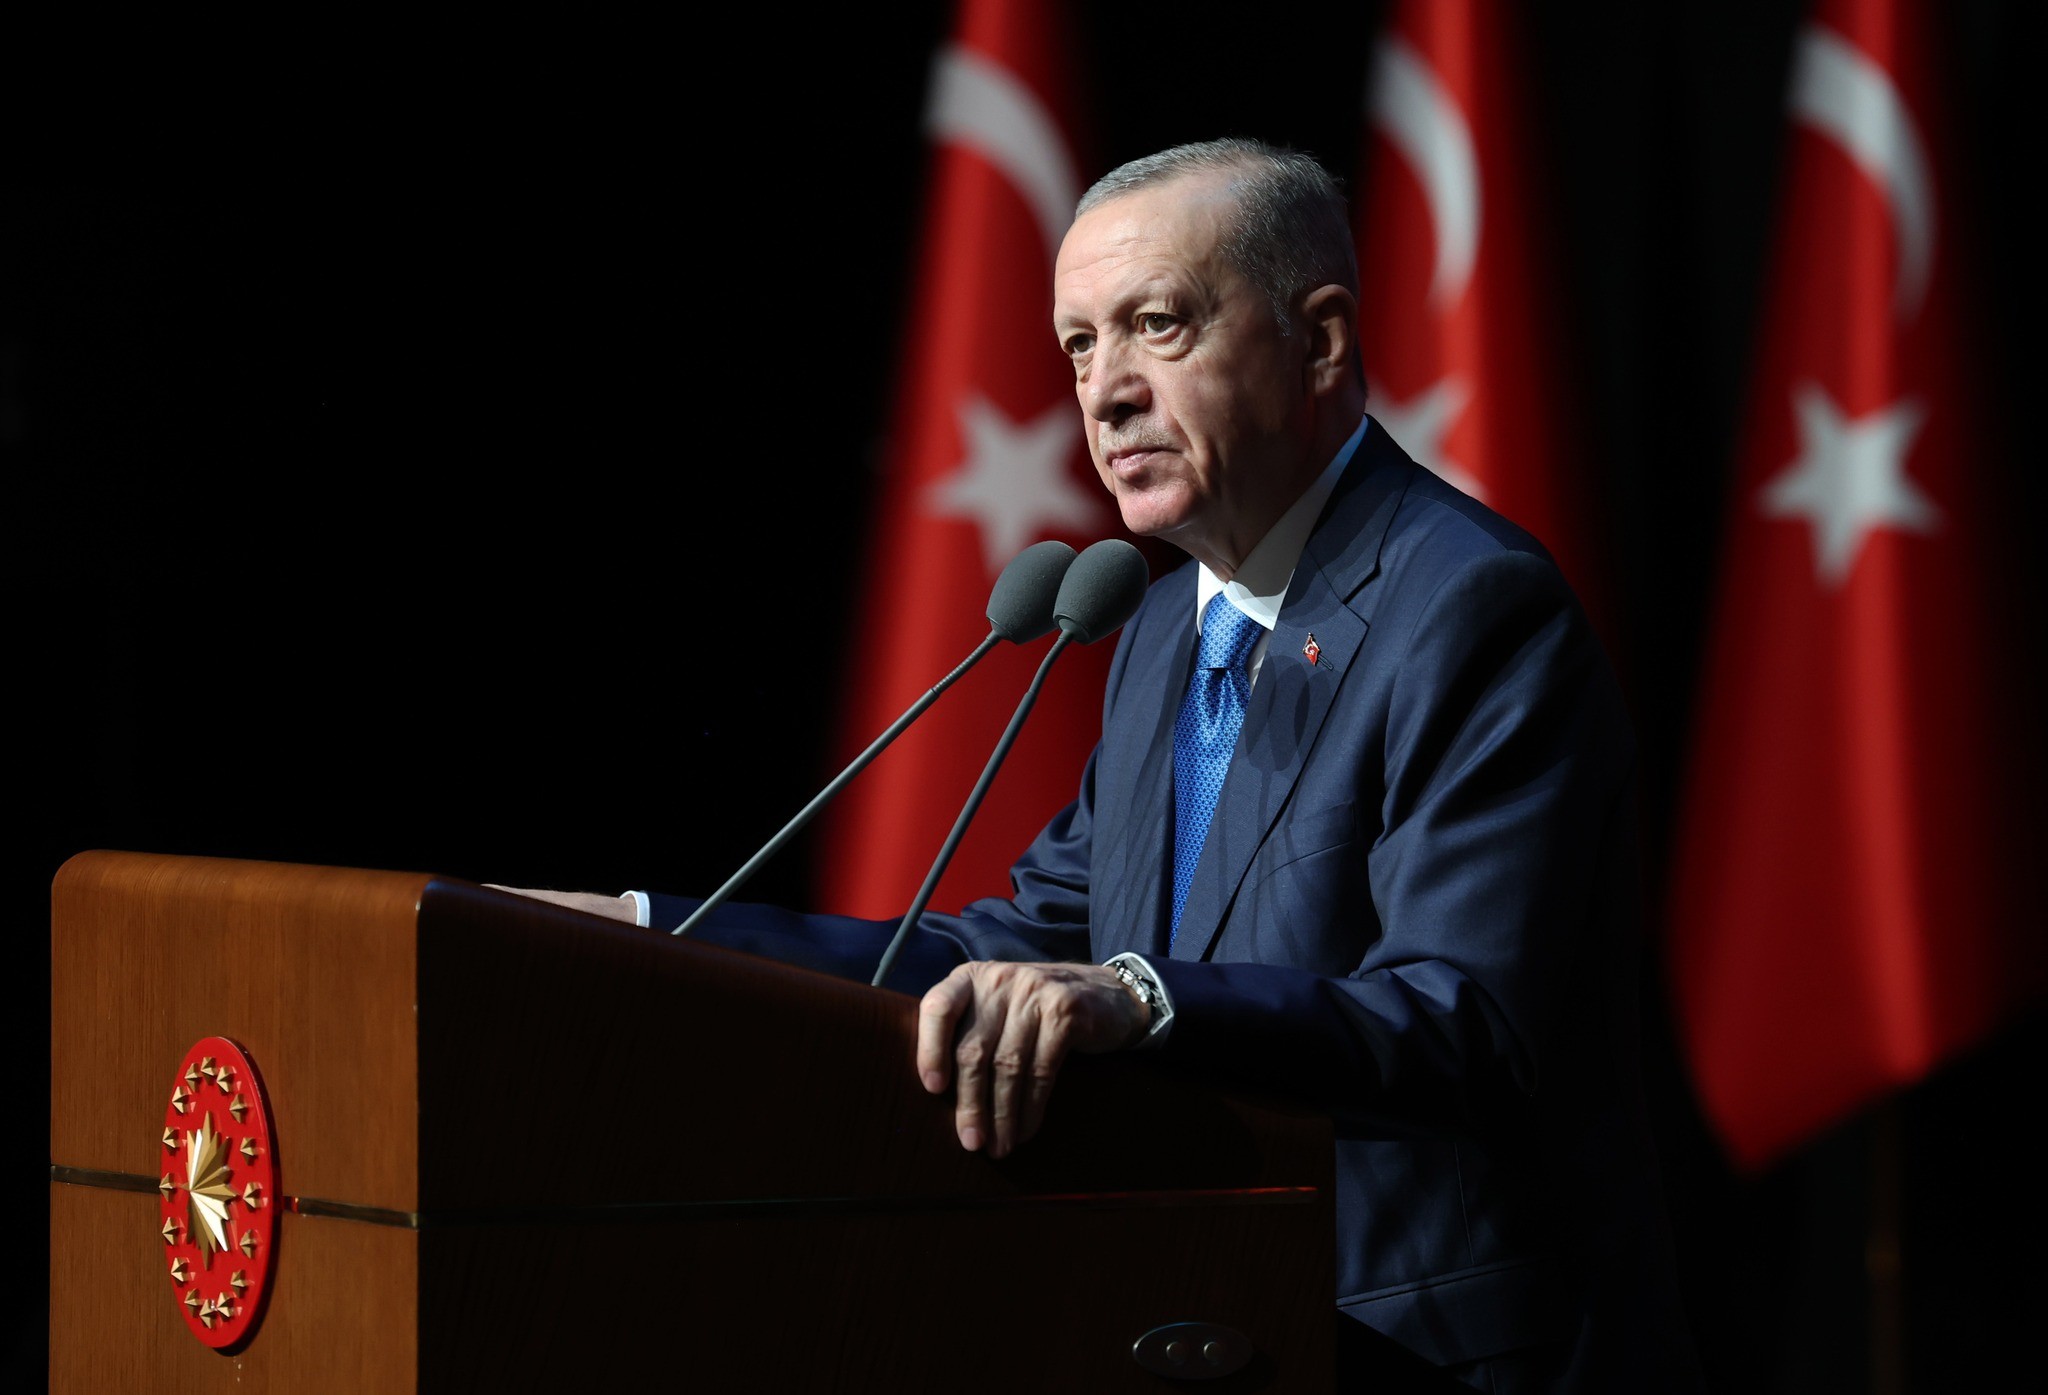 Recep Tayyip Erdogan, președintele Turciei: ”Hamas nu e grupare teroristă, luptă pentru libertate”